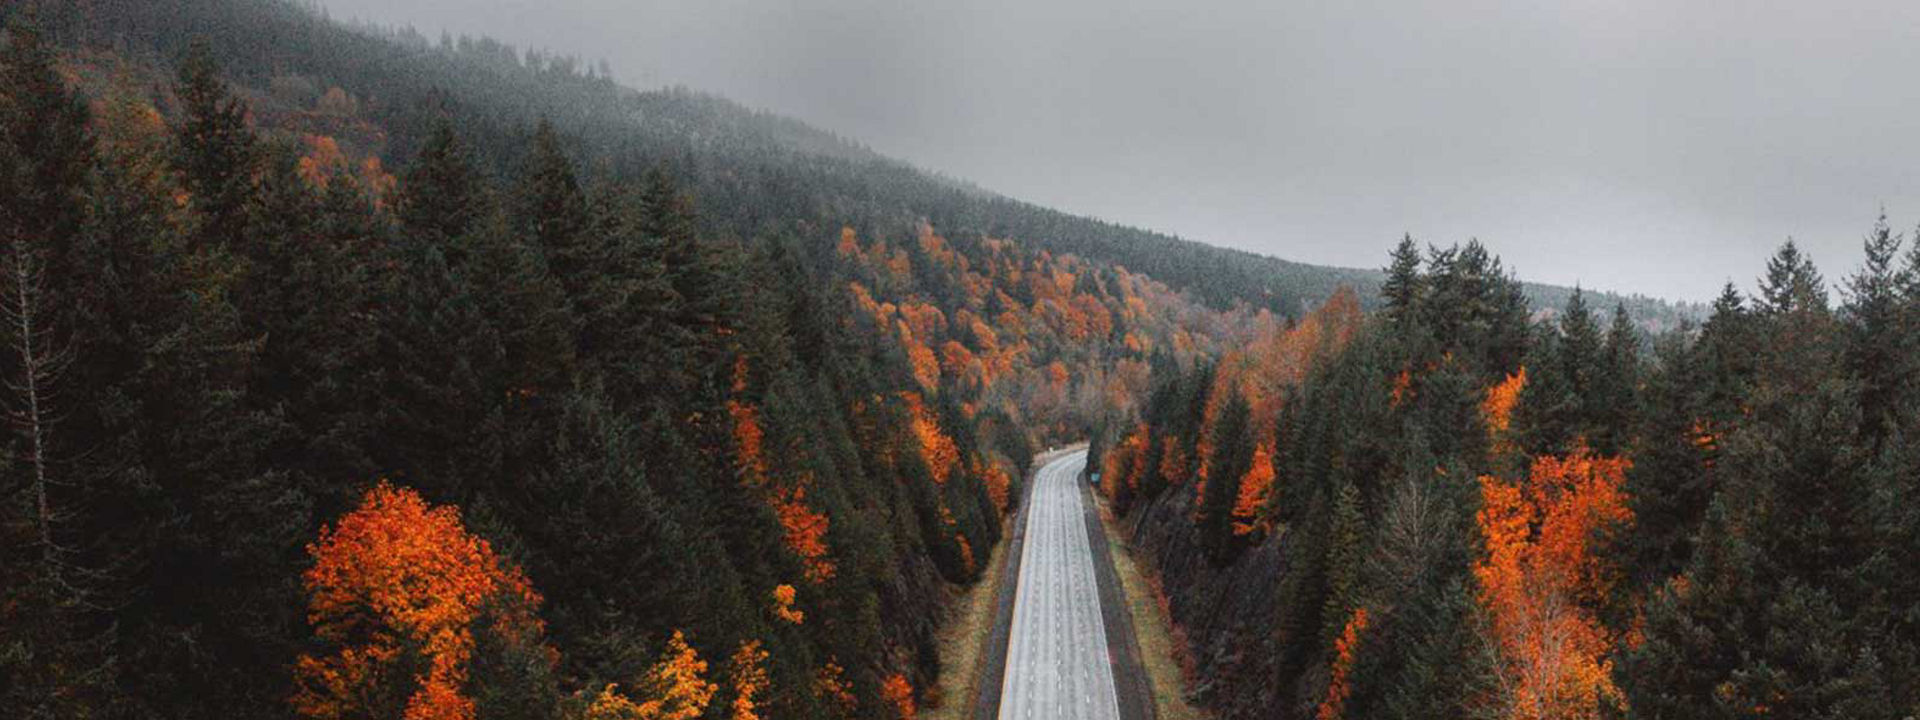 Aceasta este imaginea unei autostrăzi pustii ce trece printr-o pădure, toamna, indicând că Weather Control este pentru toate anotimpurile